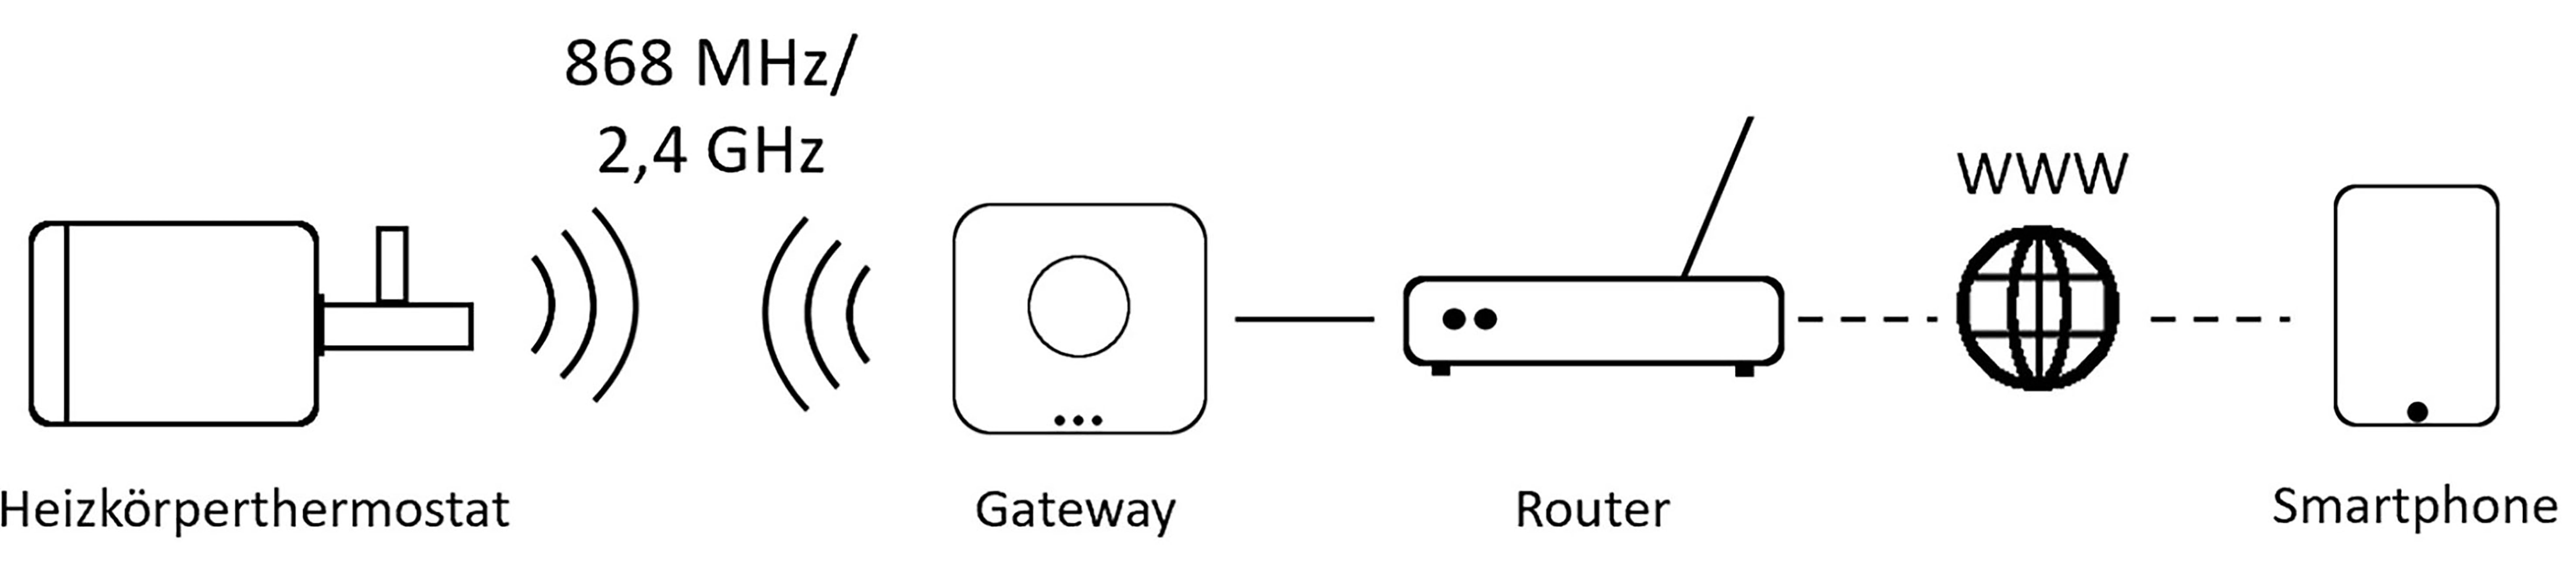 Die Grafik zeigt den Weg der Kommunikation der Systeme (von li.:) Das Heizkörperthermostat bekommt über eine Funkfrequenz die Befehle des Gateways, des Netzwerkknotens. Das Gateway ist in der Regel direkt mit einem LAN-Kabel an dem Router angeschlossen. Ein (Steuer-) Gerät, z. B. ein Smartphone, kommuniziert über das Internet mit dem Router und sendet die gewünschten Anforderungen an das Gerät. Der Router empfängt über das